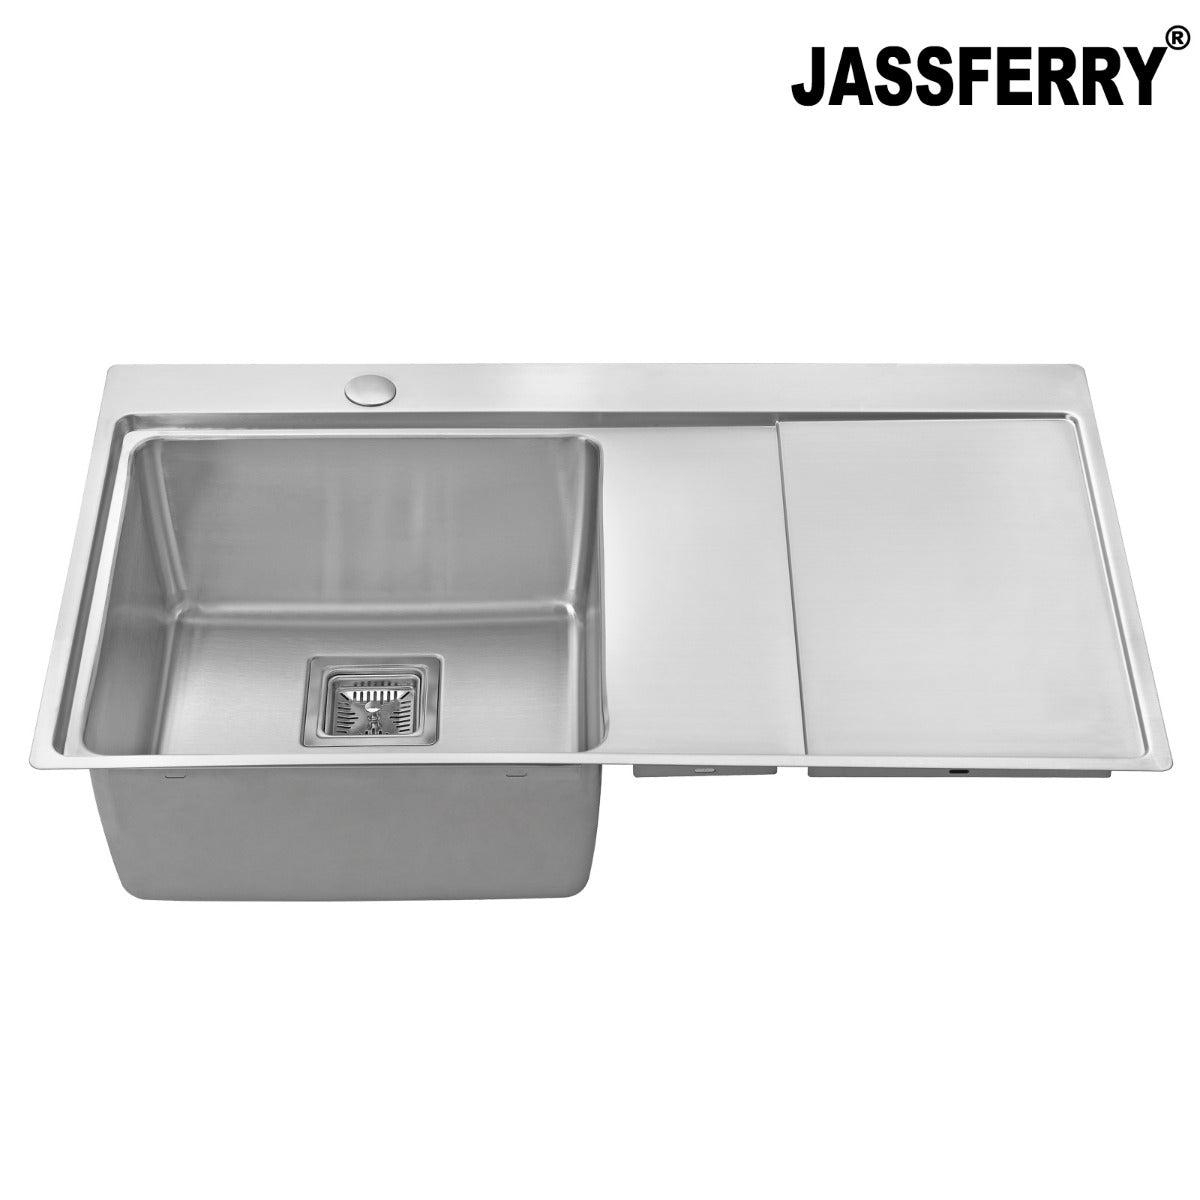 JassferryJASSFERRY 860x520 mm Brilliant Stainless Steel Kitchen Sink Single 1 Bowl Righthand Drainer - 660Kitchen Sinks